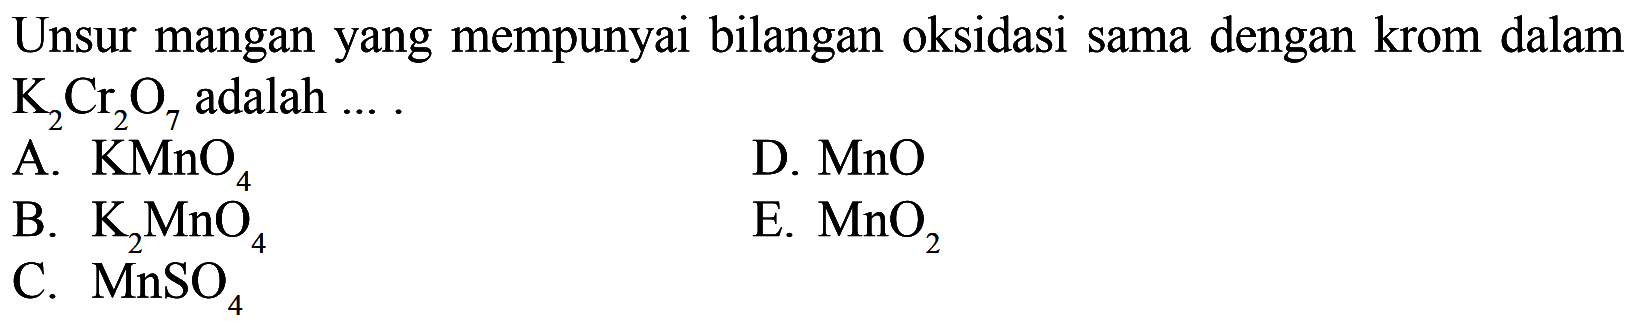 Unsur mangan yang mempunyai bilangan oksidasi sama dengan krom dalam K2Cr2O7 adalah... A.  KMnO4 D.  MnO B.  K2 MnO4 E.  MnO2 C.  MnSO4 